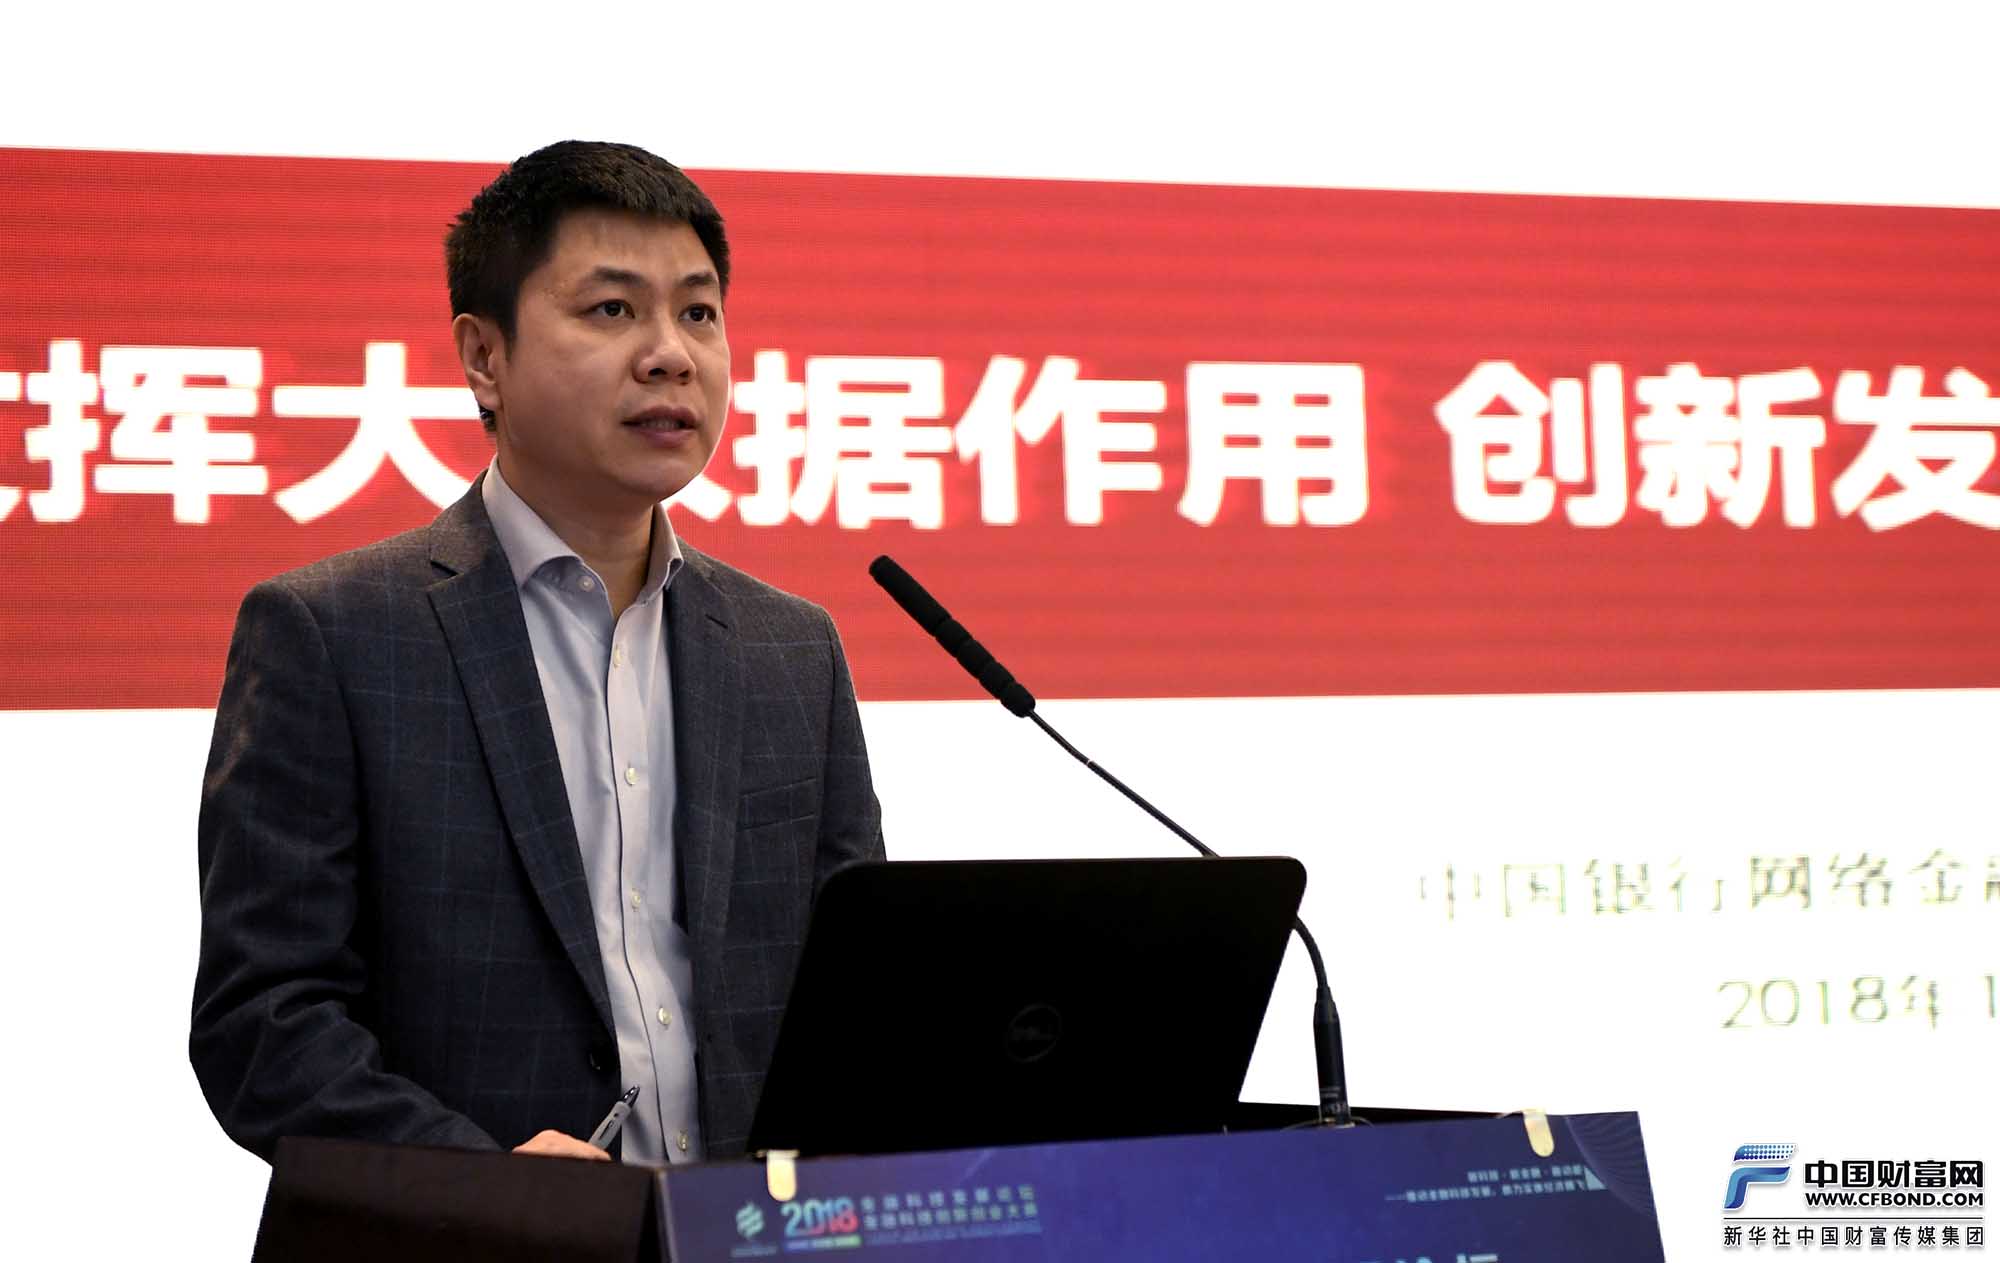 中国银行网络金融部副总经理曹汉平发言